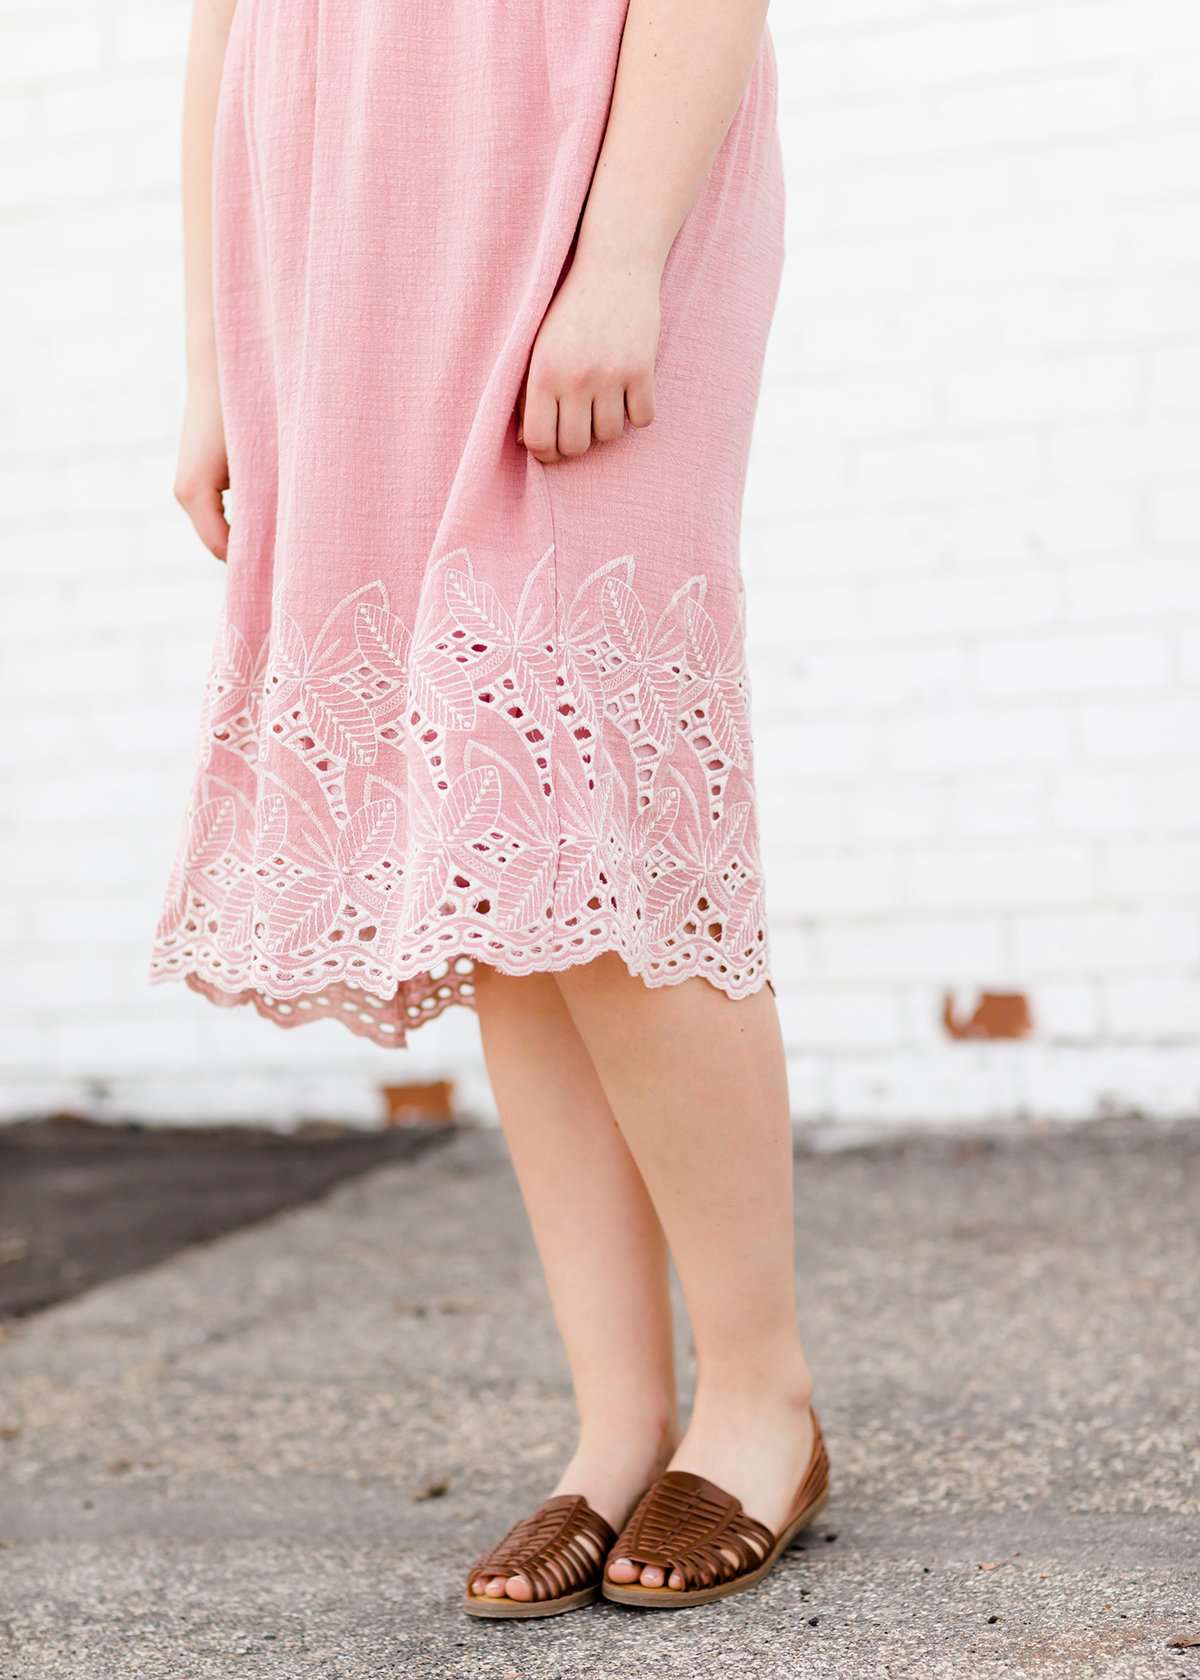 modest women's pink below the knee 100% cotton dress